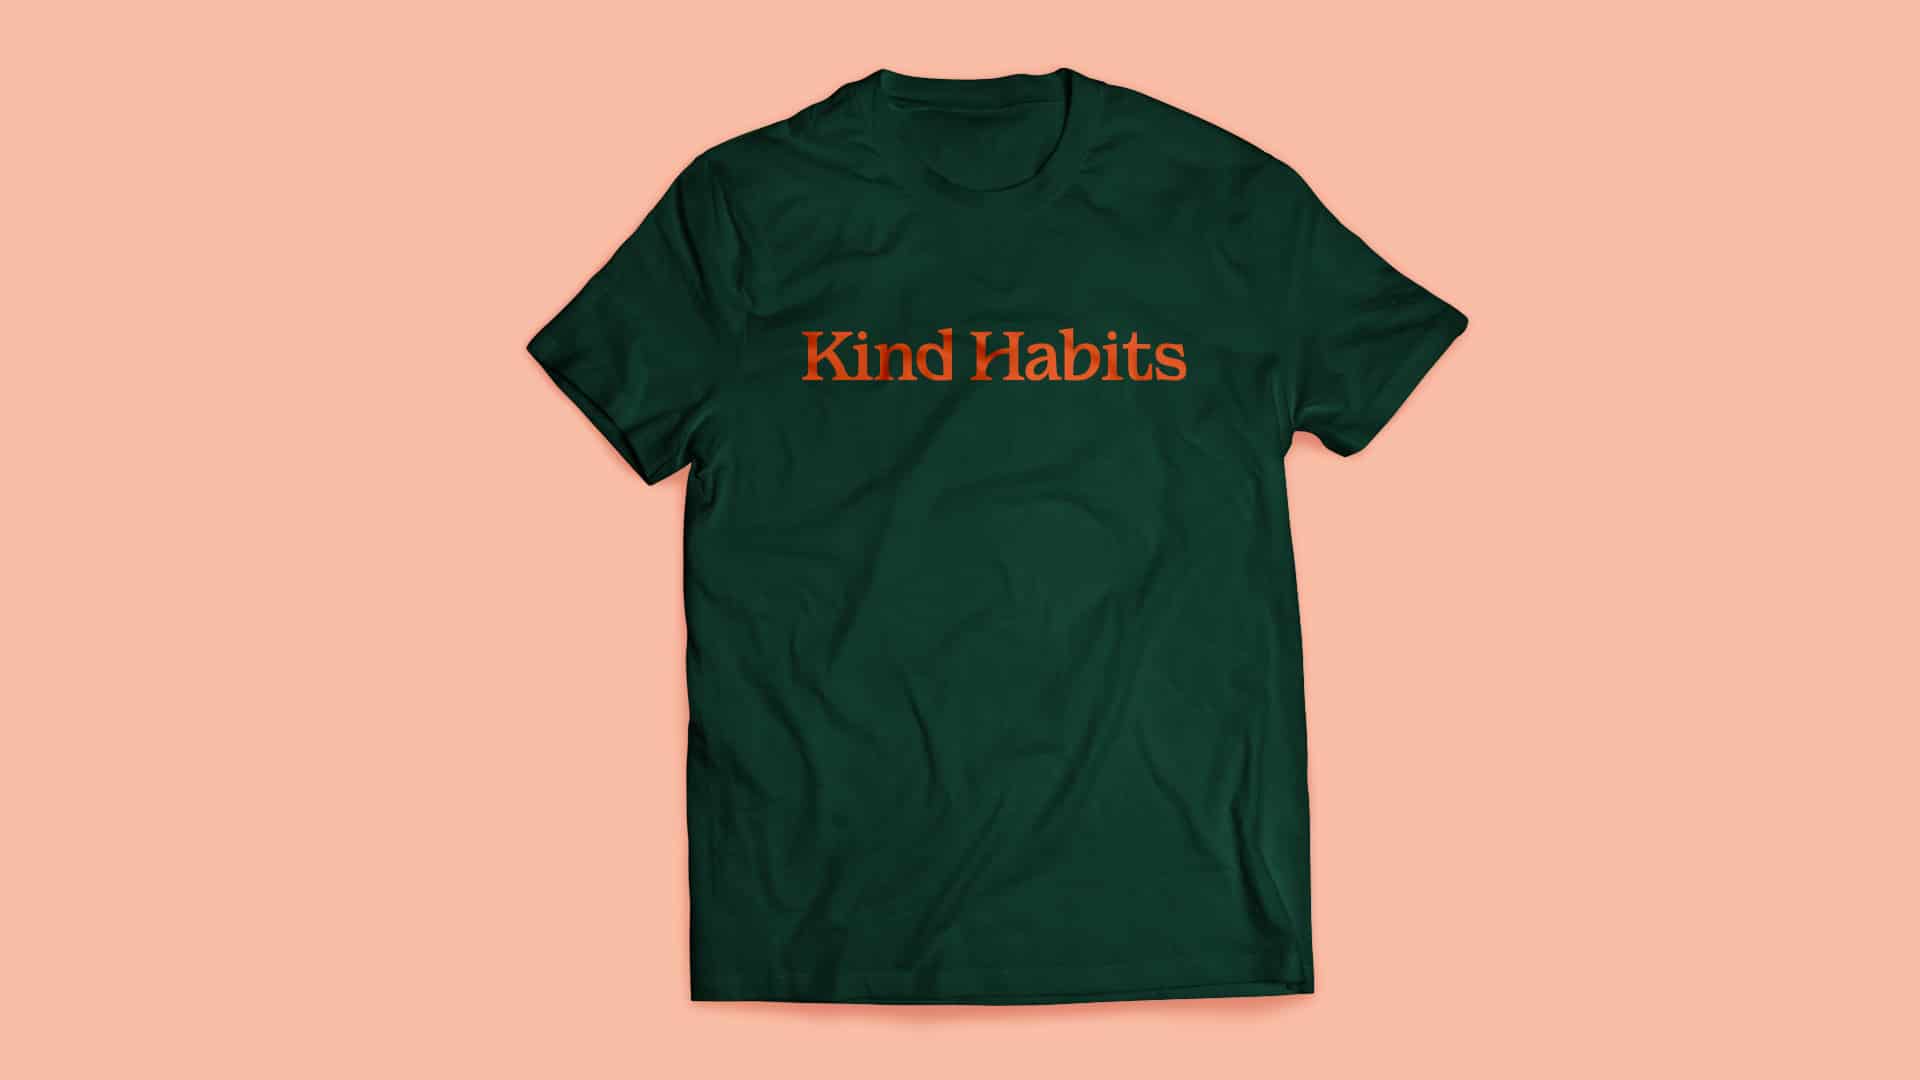 Image of Kind Habits branded t-shirt.